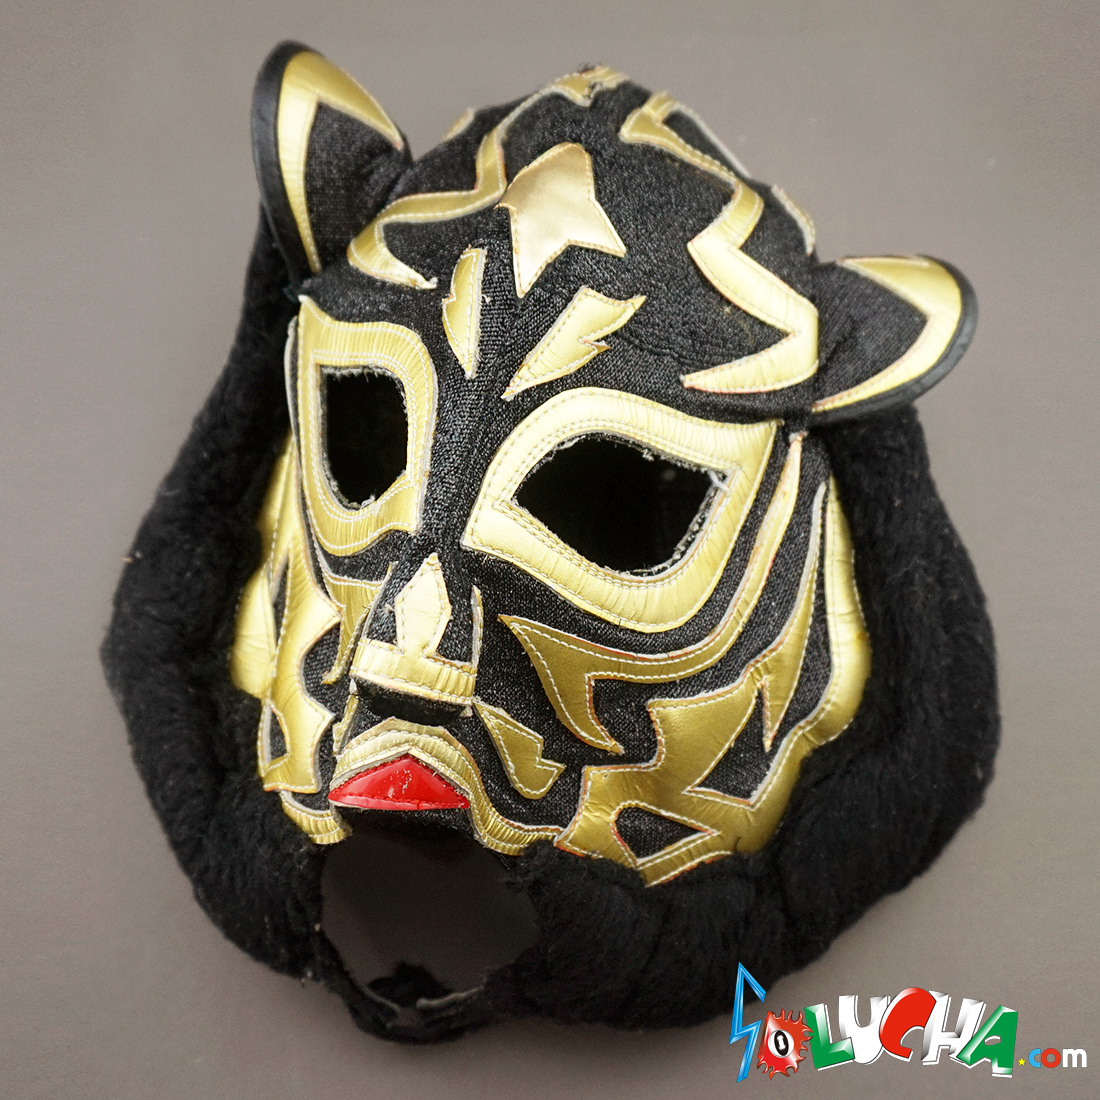 初代タイガーマスク 初代ブラック タイガーマスク 実使用マスク